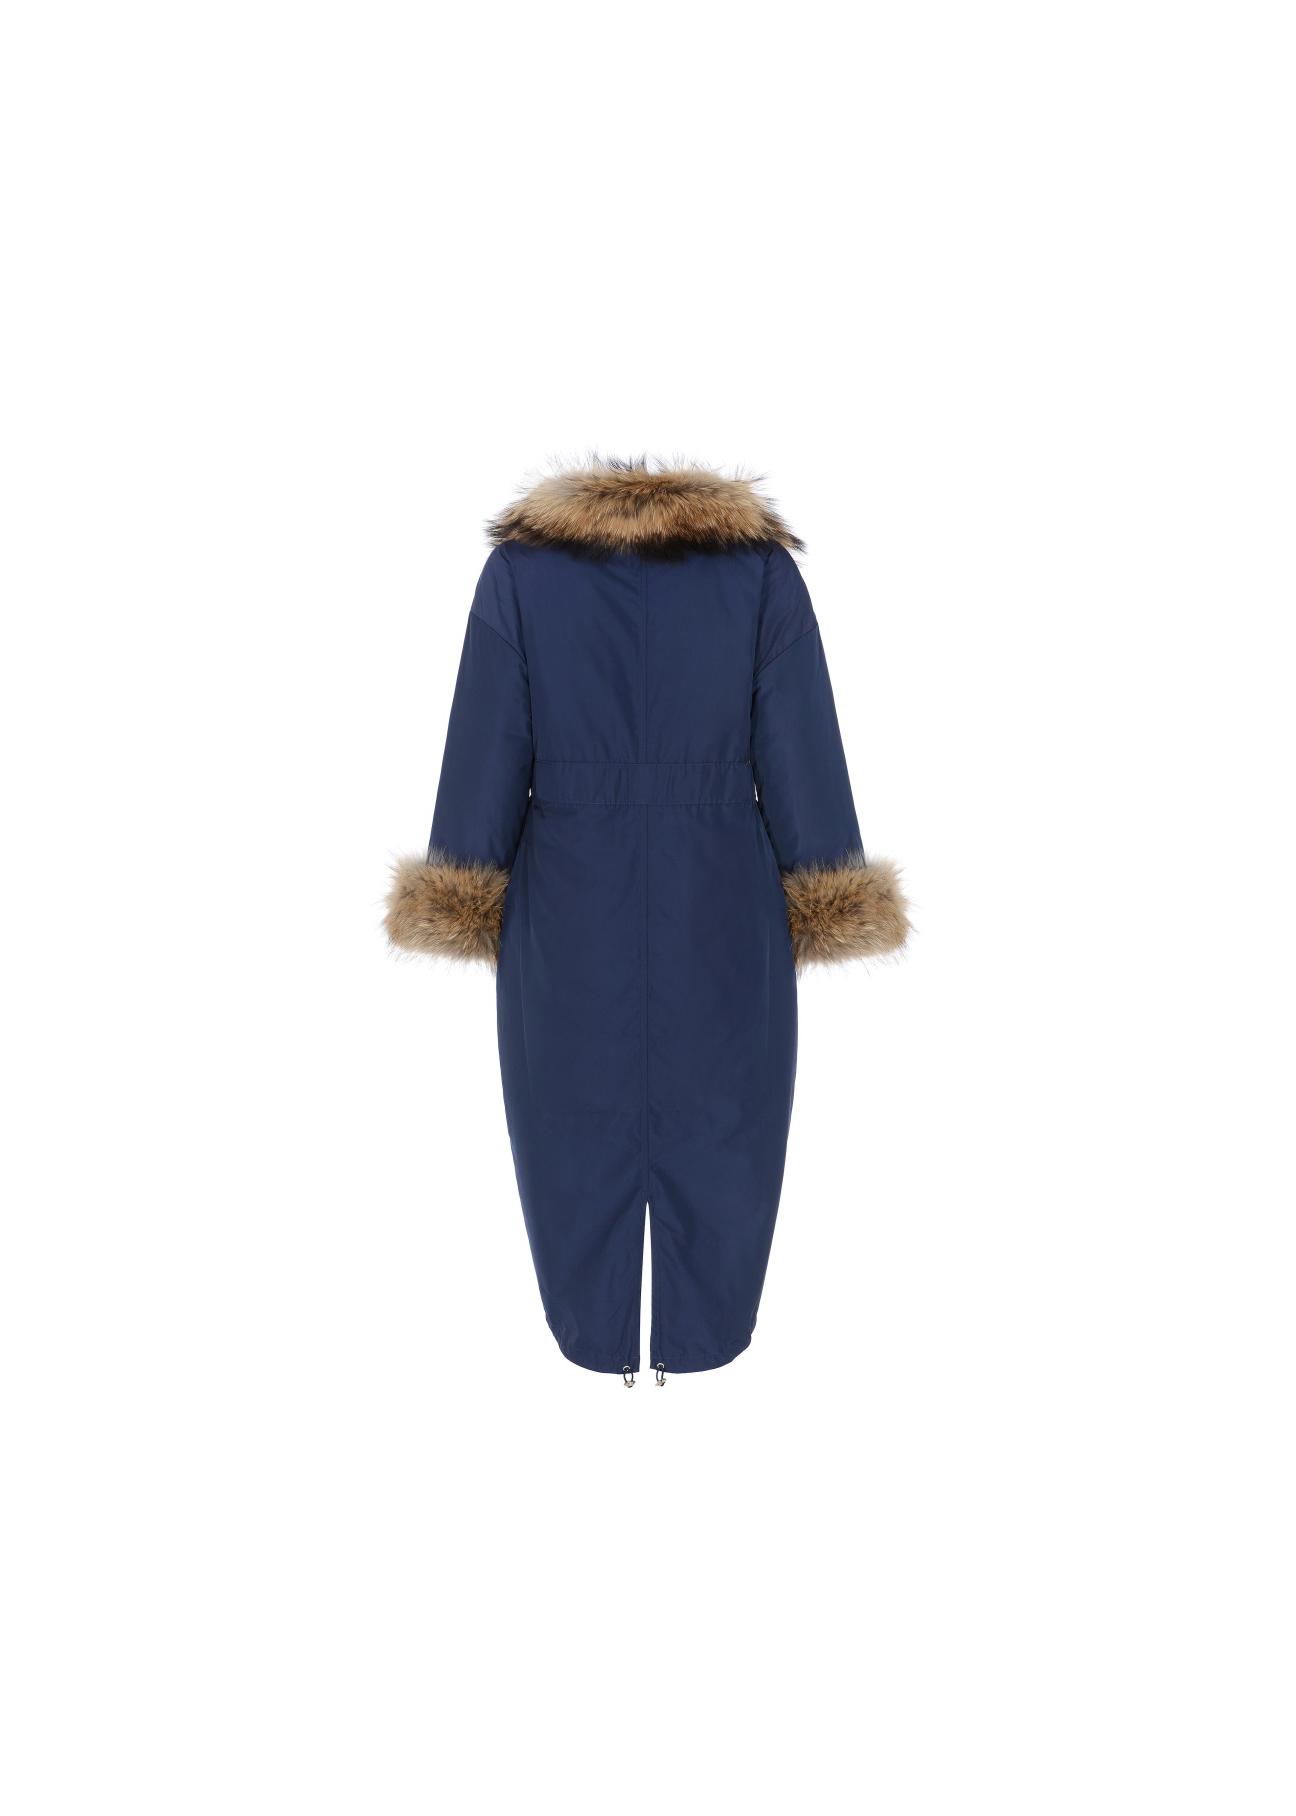 Ciepła kurtka damska o wydłużonej formie KURDT-0155-69(Z21)